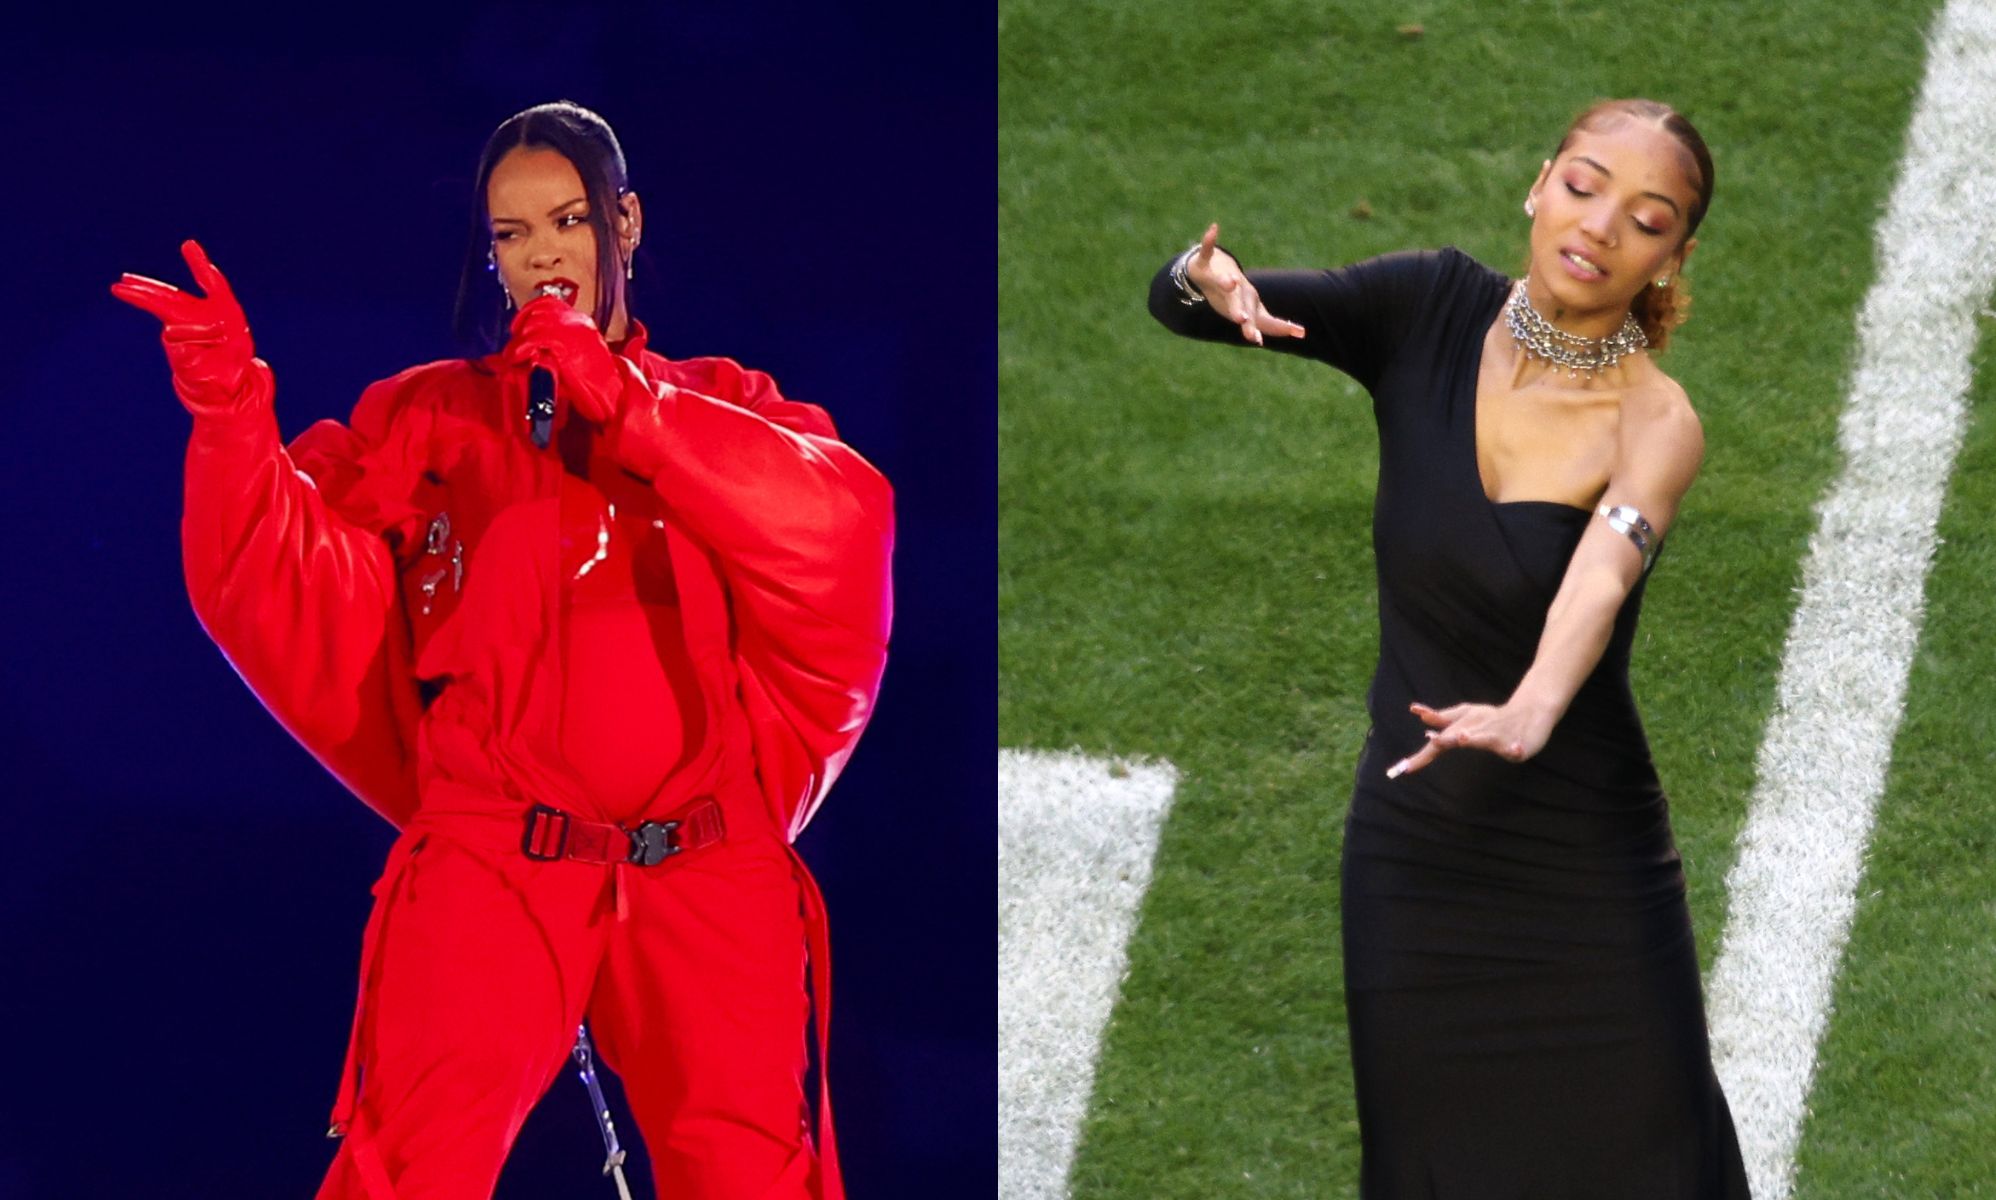 La intérprete de Rihanna en la Super Bowl es la gran estrella de este año